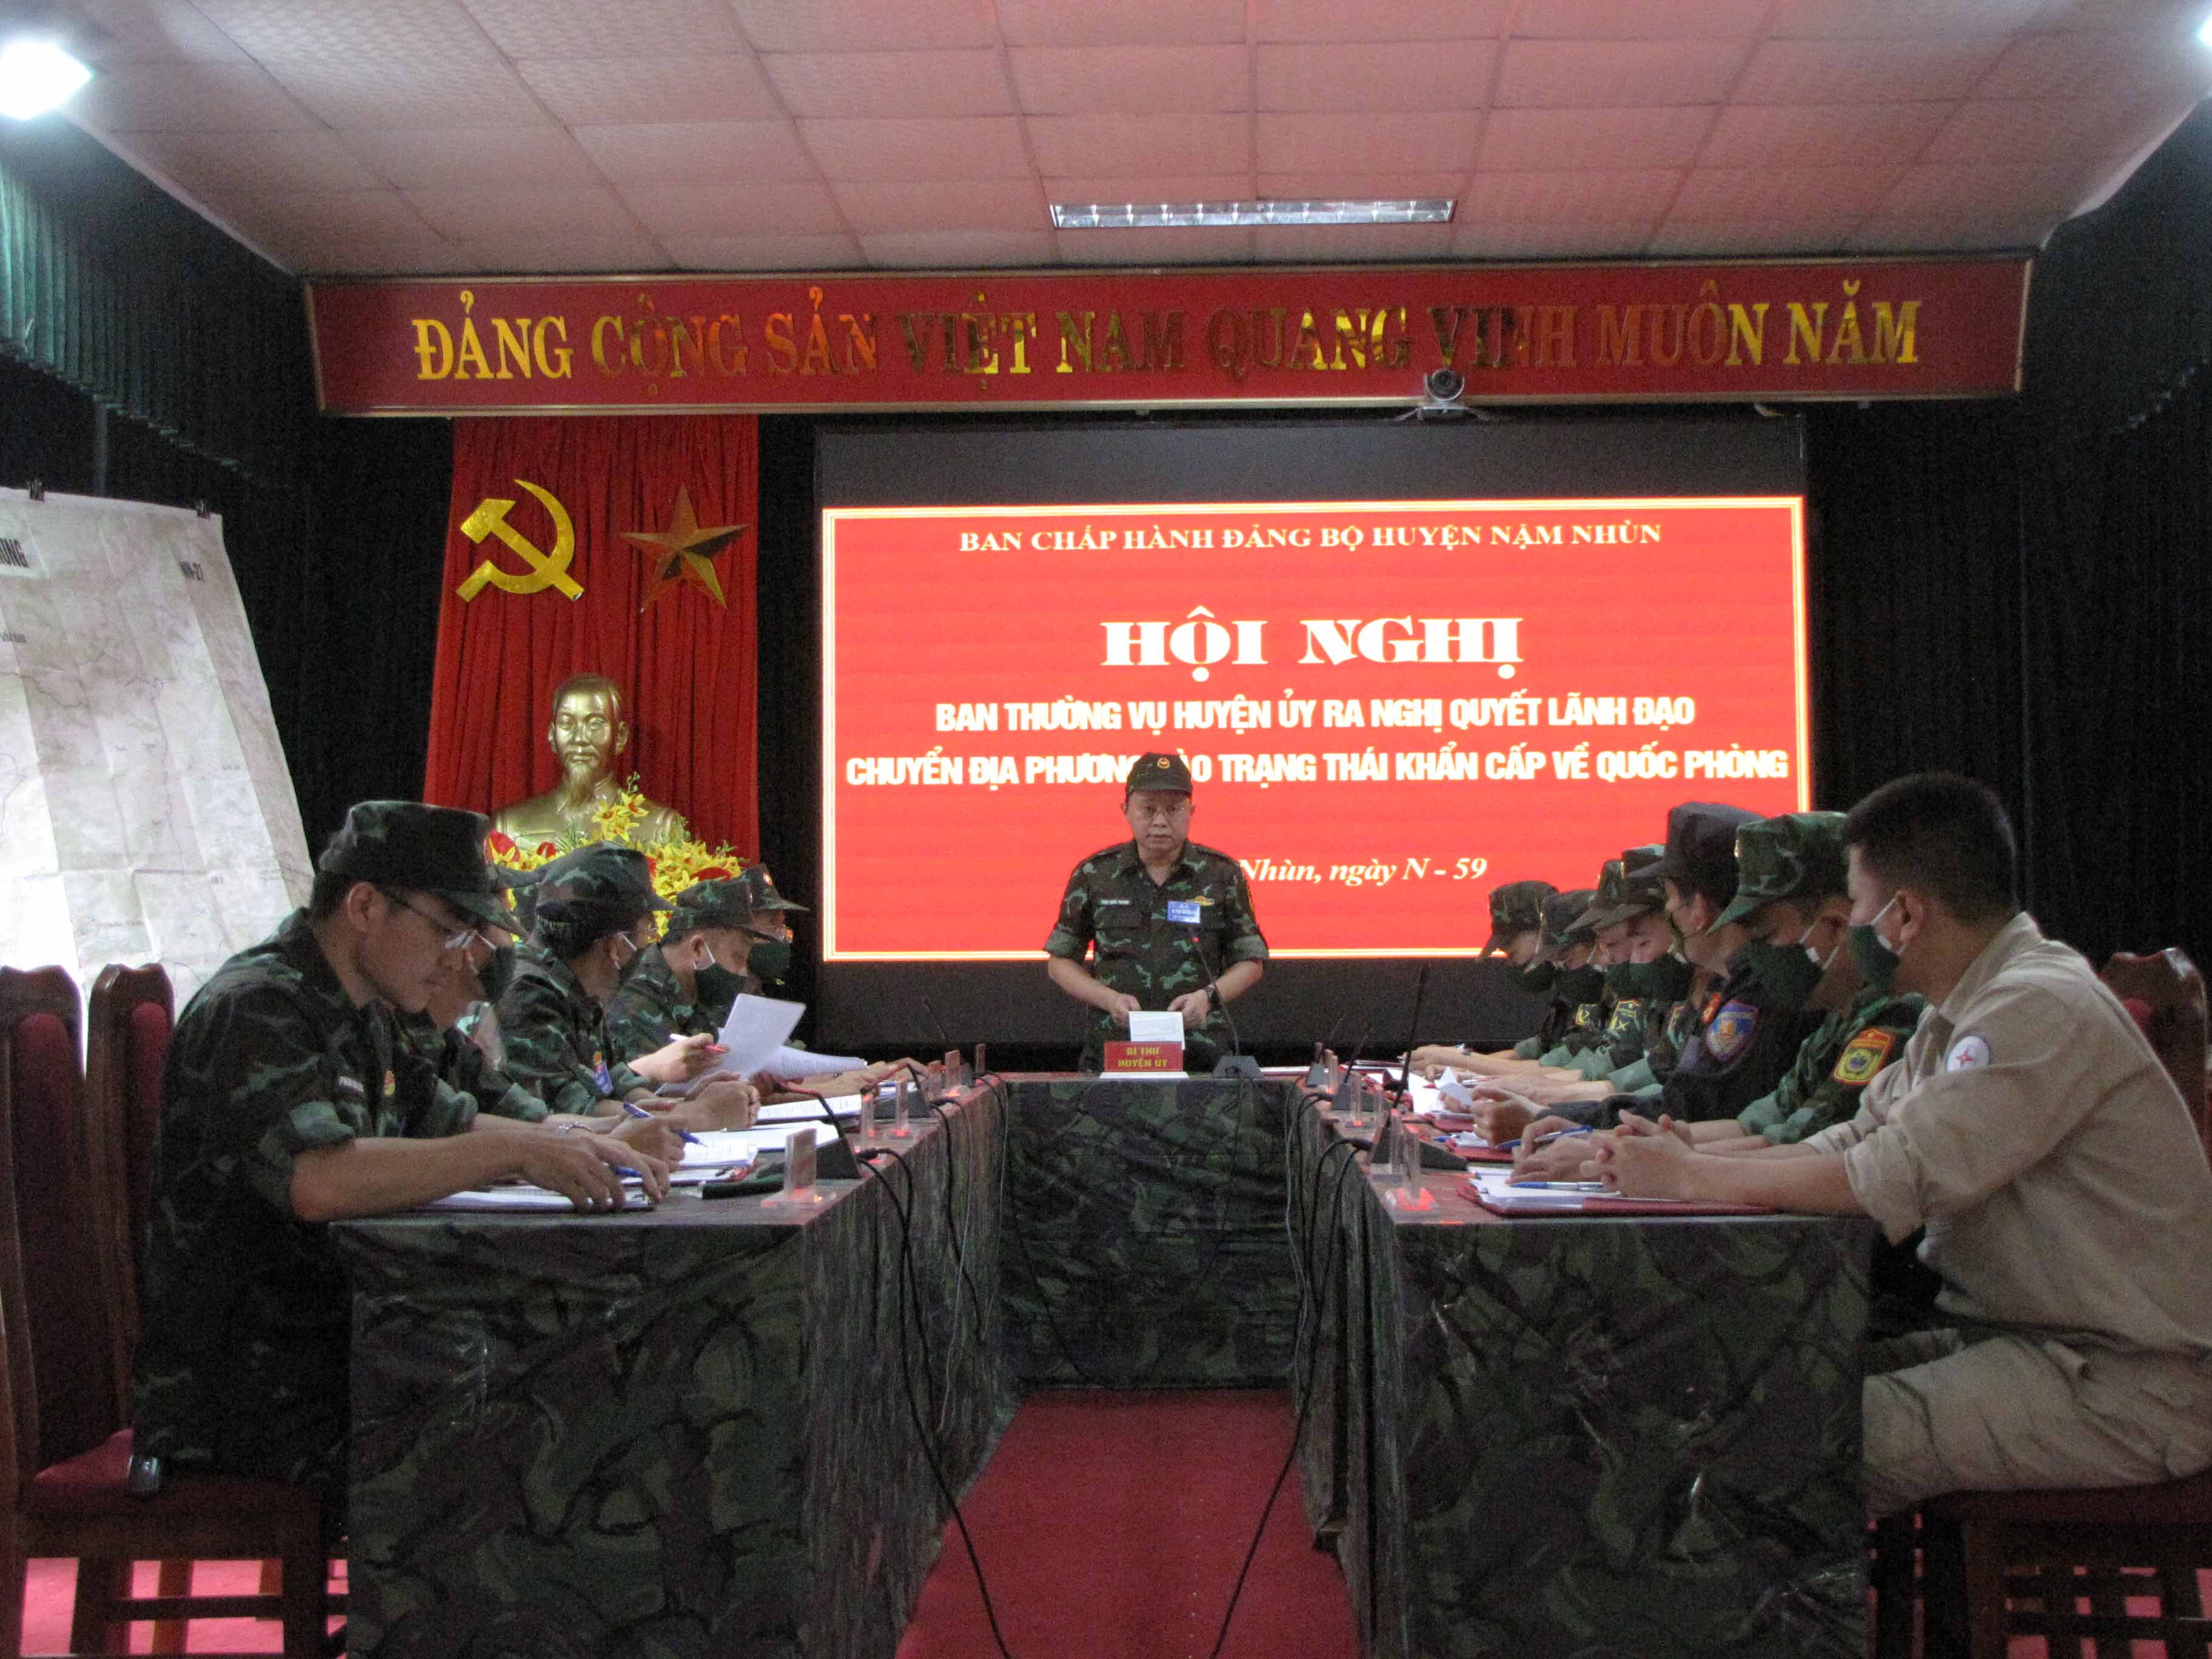 Hội nghị Ban Thường vụ Huyện ủy ra Nghị quyết lãnh đạo chuyển địa phương vào trạng thái khẩn cấp về quốc phòng.